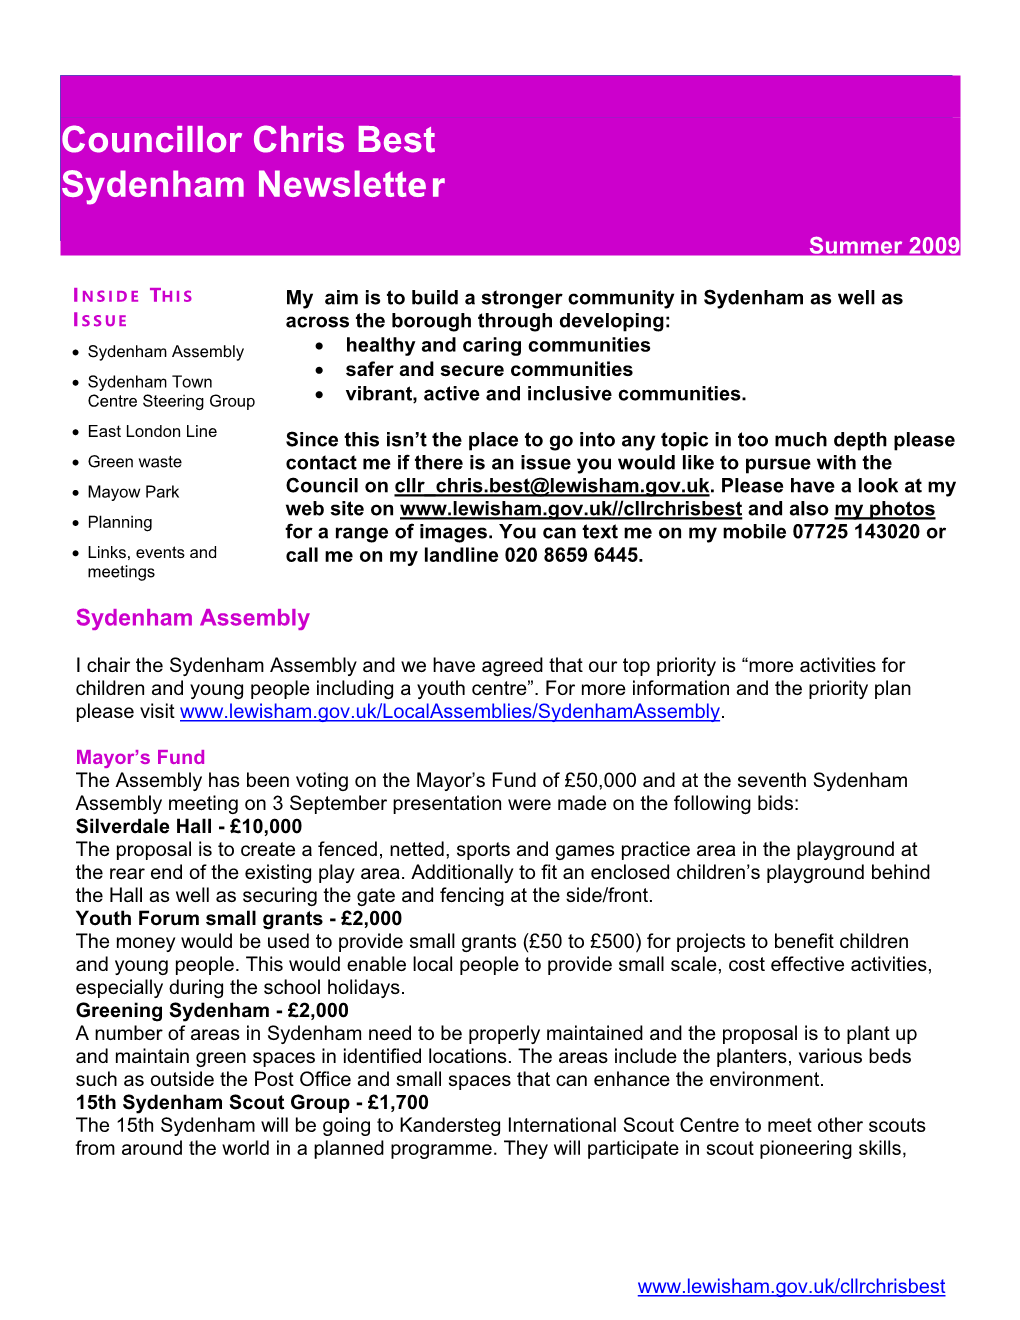 Councillor Chris Best Sydenham Newsletter